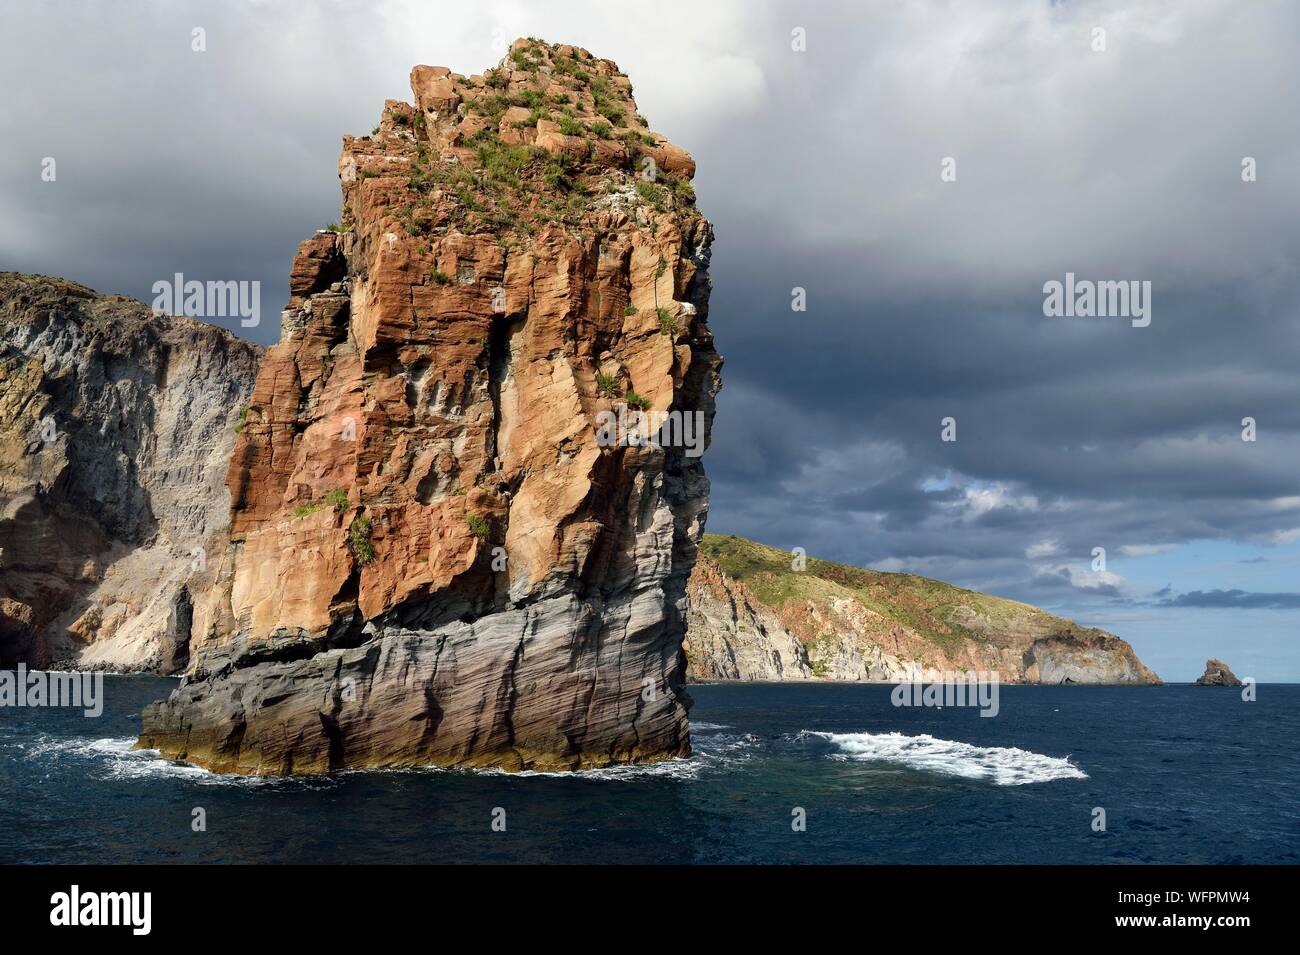 Italien, Sizilien, Liparische Inseln, ein UNESCO Weltkulturerbe, Insel Lipari, die Klippen an der Südküste der Insel, Lipari Faraglioni, Rock der erstarrten Magma aus einem vulkanischen Plug genannt Pietra Lunga (Langer Stein) Stockfoto